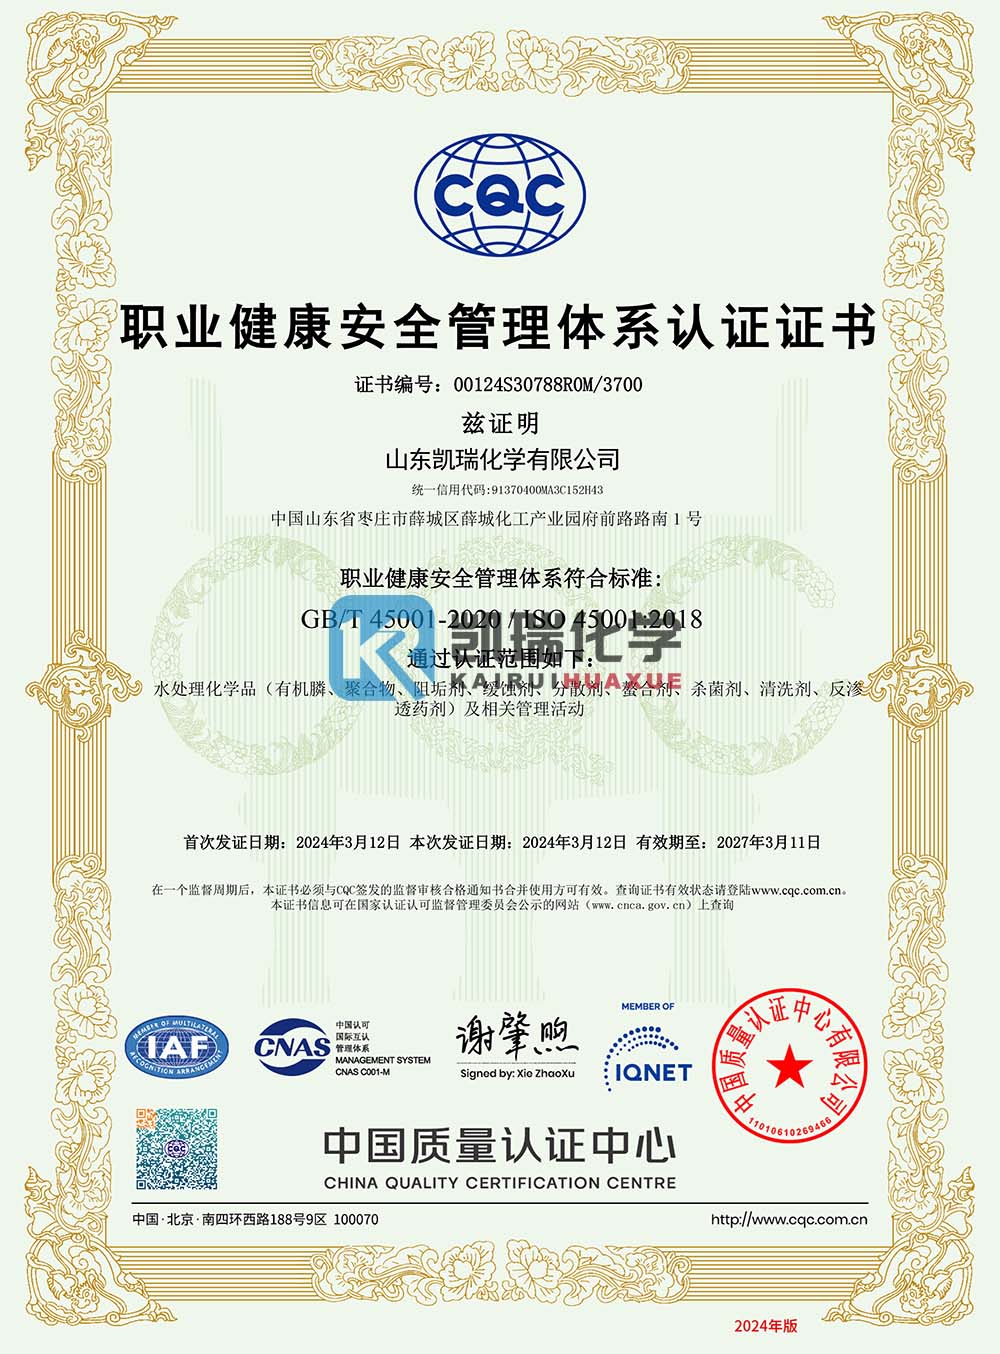 山东凯瑞化学职业健康安全管理体系认证证书